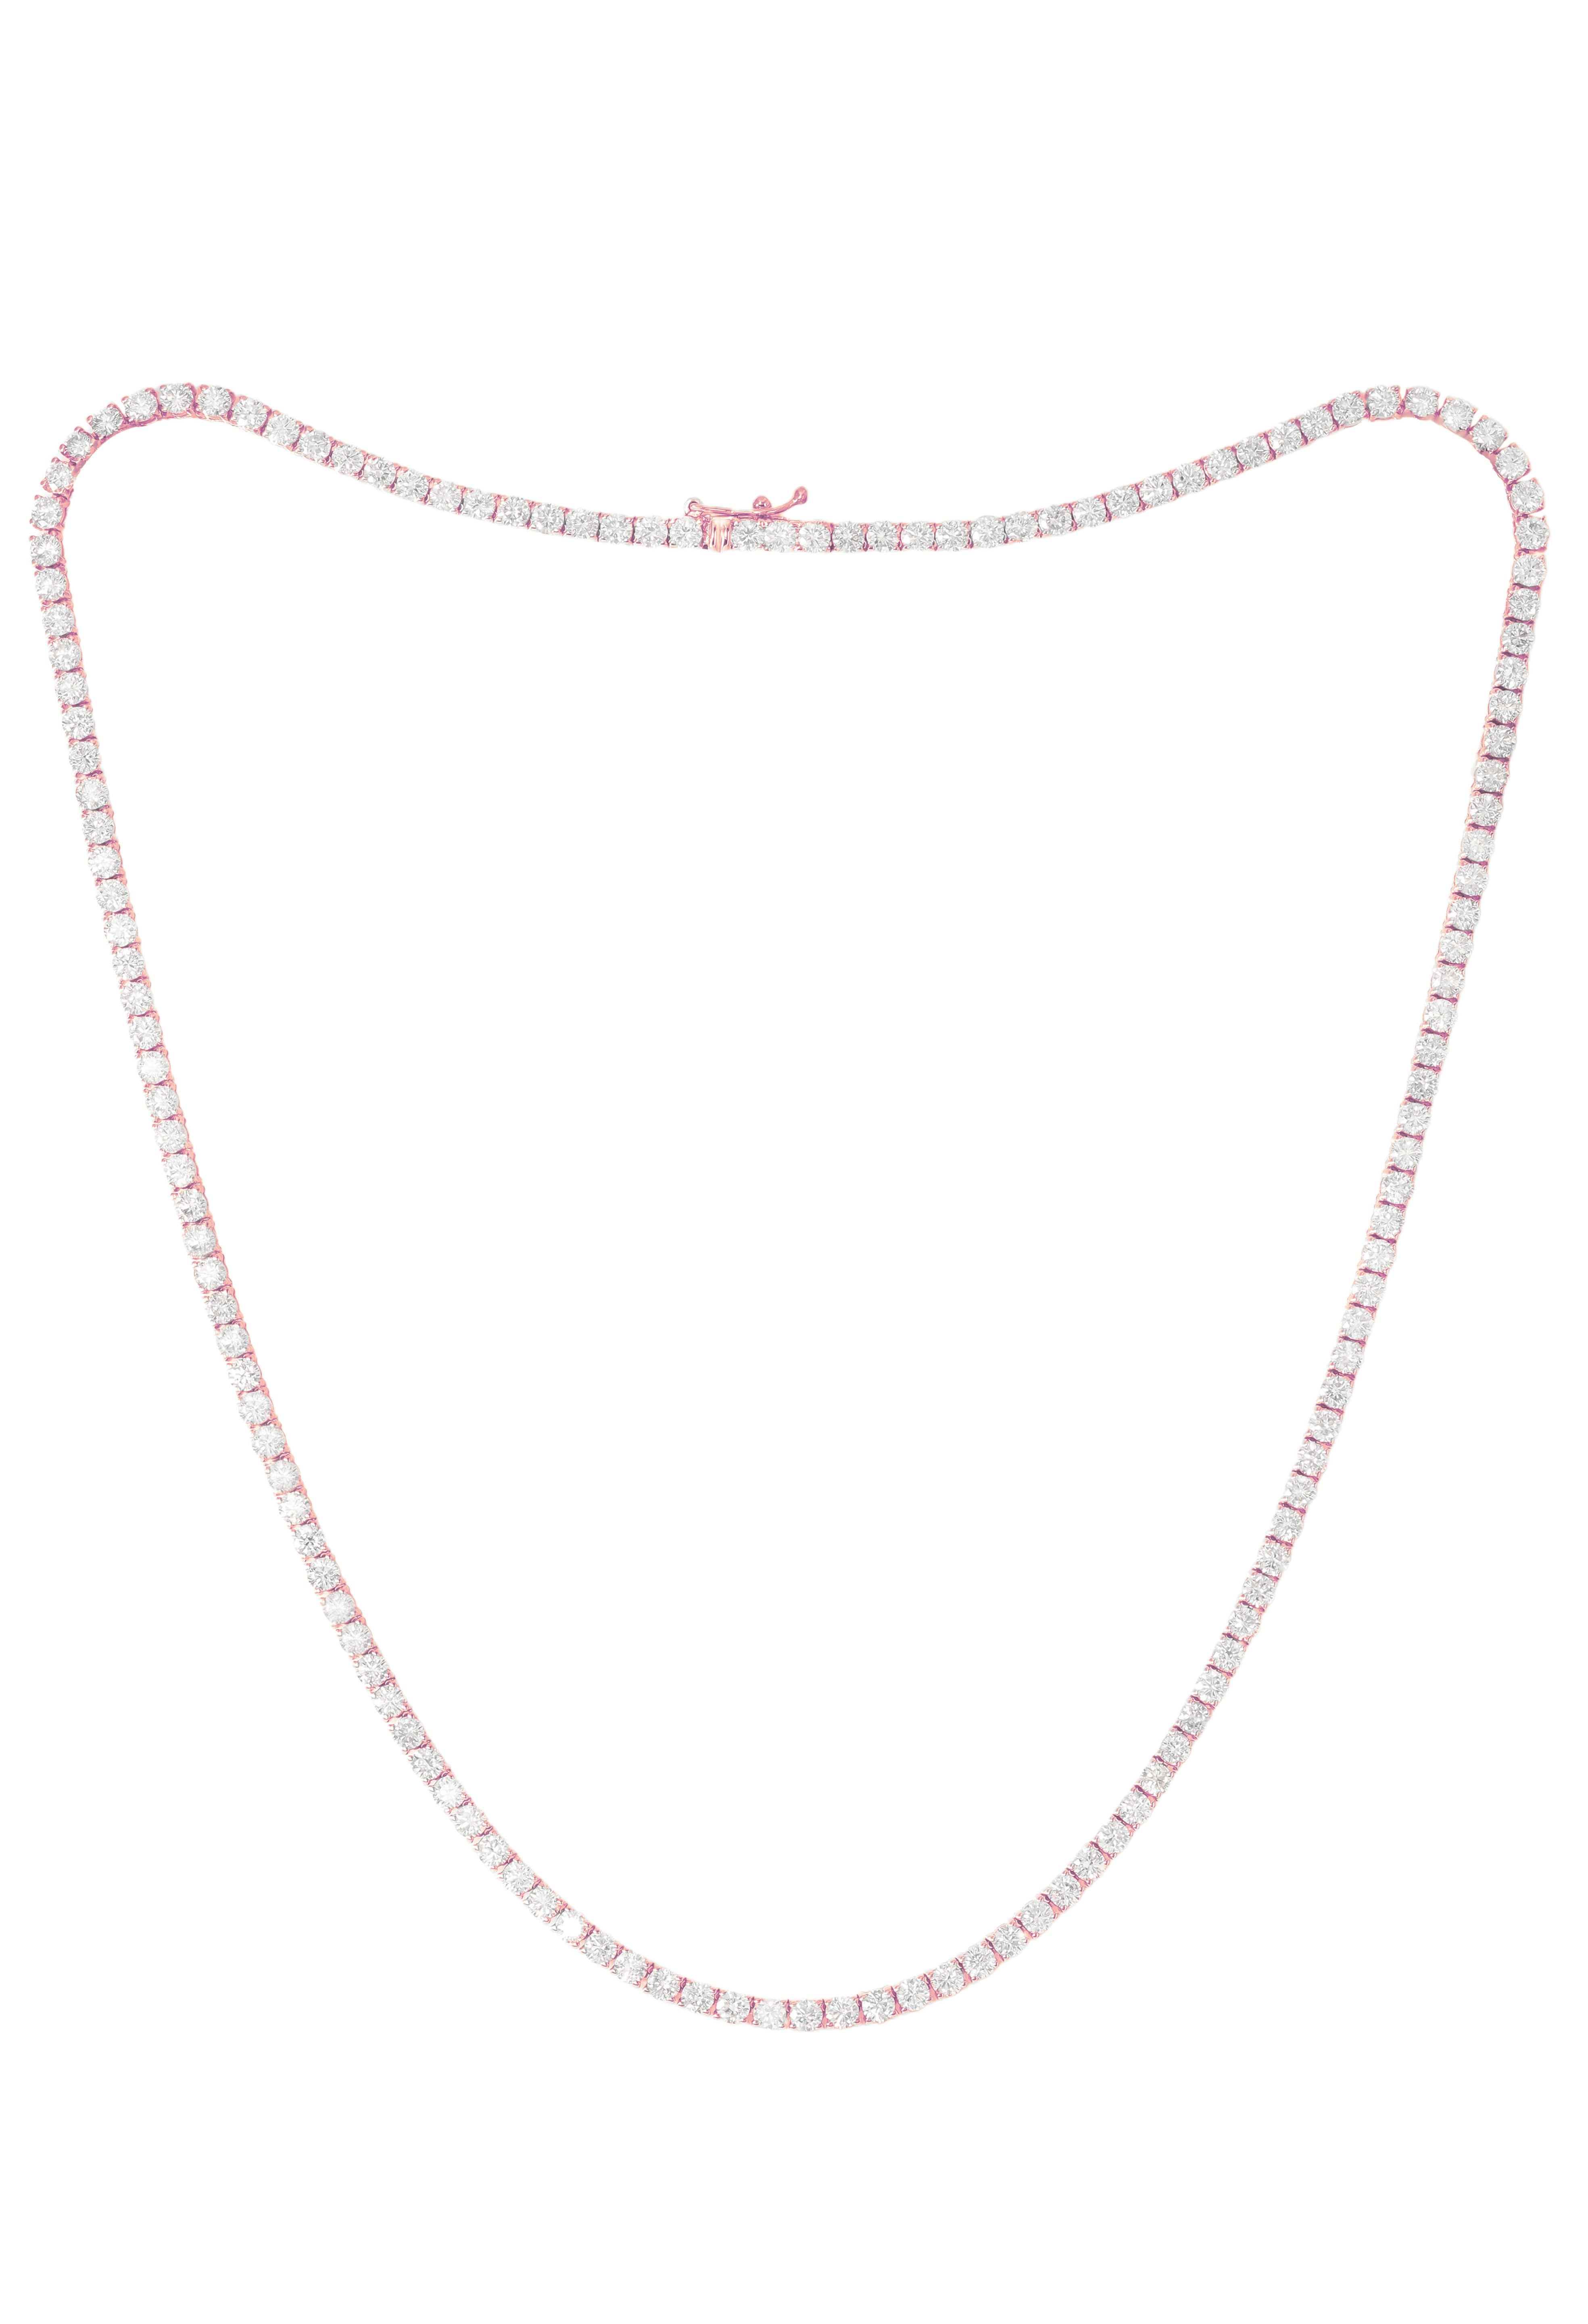 14K Rose Gold Diamond Straight Line Tennis Halskette verfügt über 12,50 Karat von Diamanten. Diana M. ist seit über 35 Jahren ein führender Anbieter von hochwertigem Schmuck.
Diana M ist ein One-Stop-Shop für alle Ihre Schmuckeinkäufe und führt eine